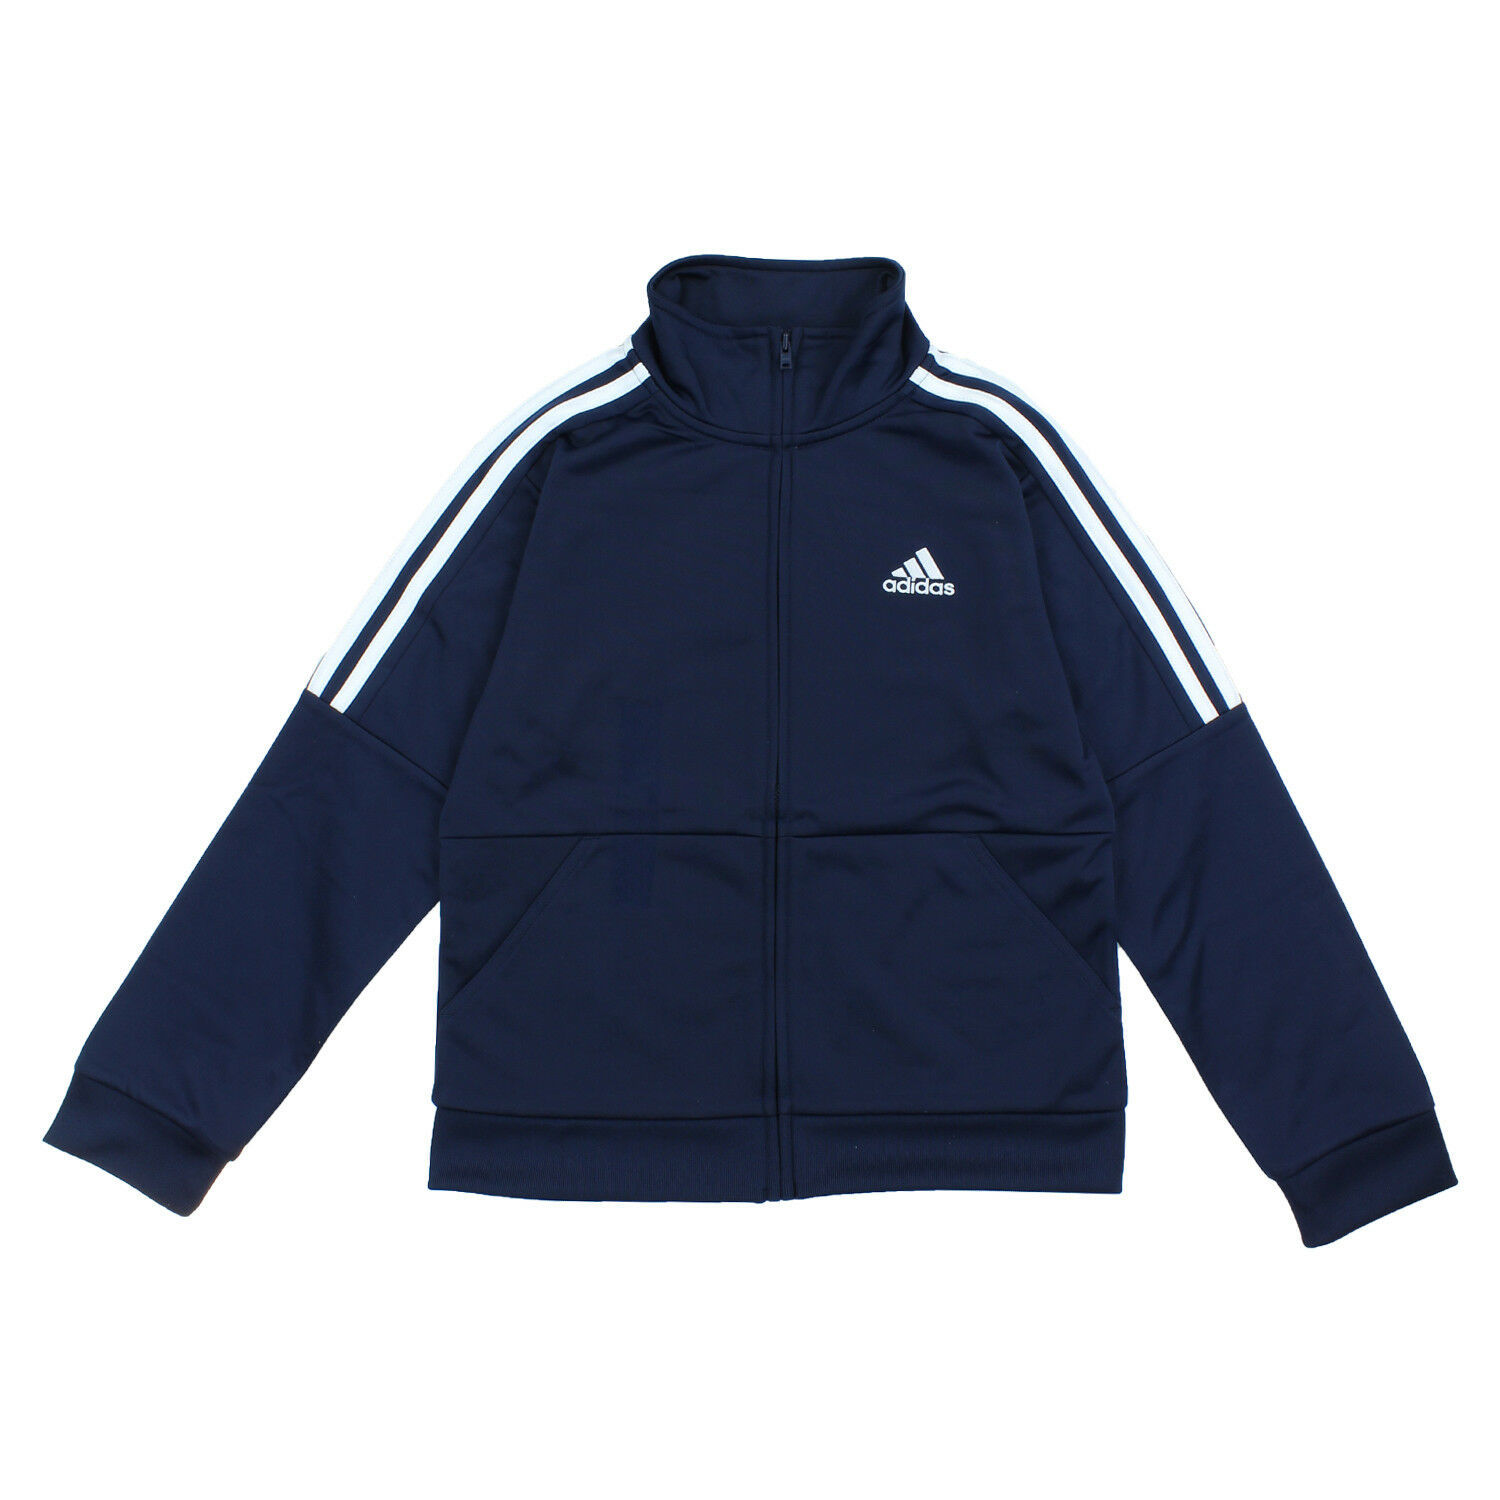 Adidas Boys Iconic Track Jacket S- (8) NAVY